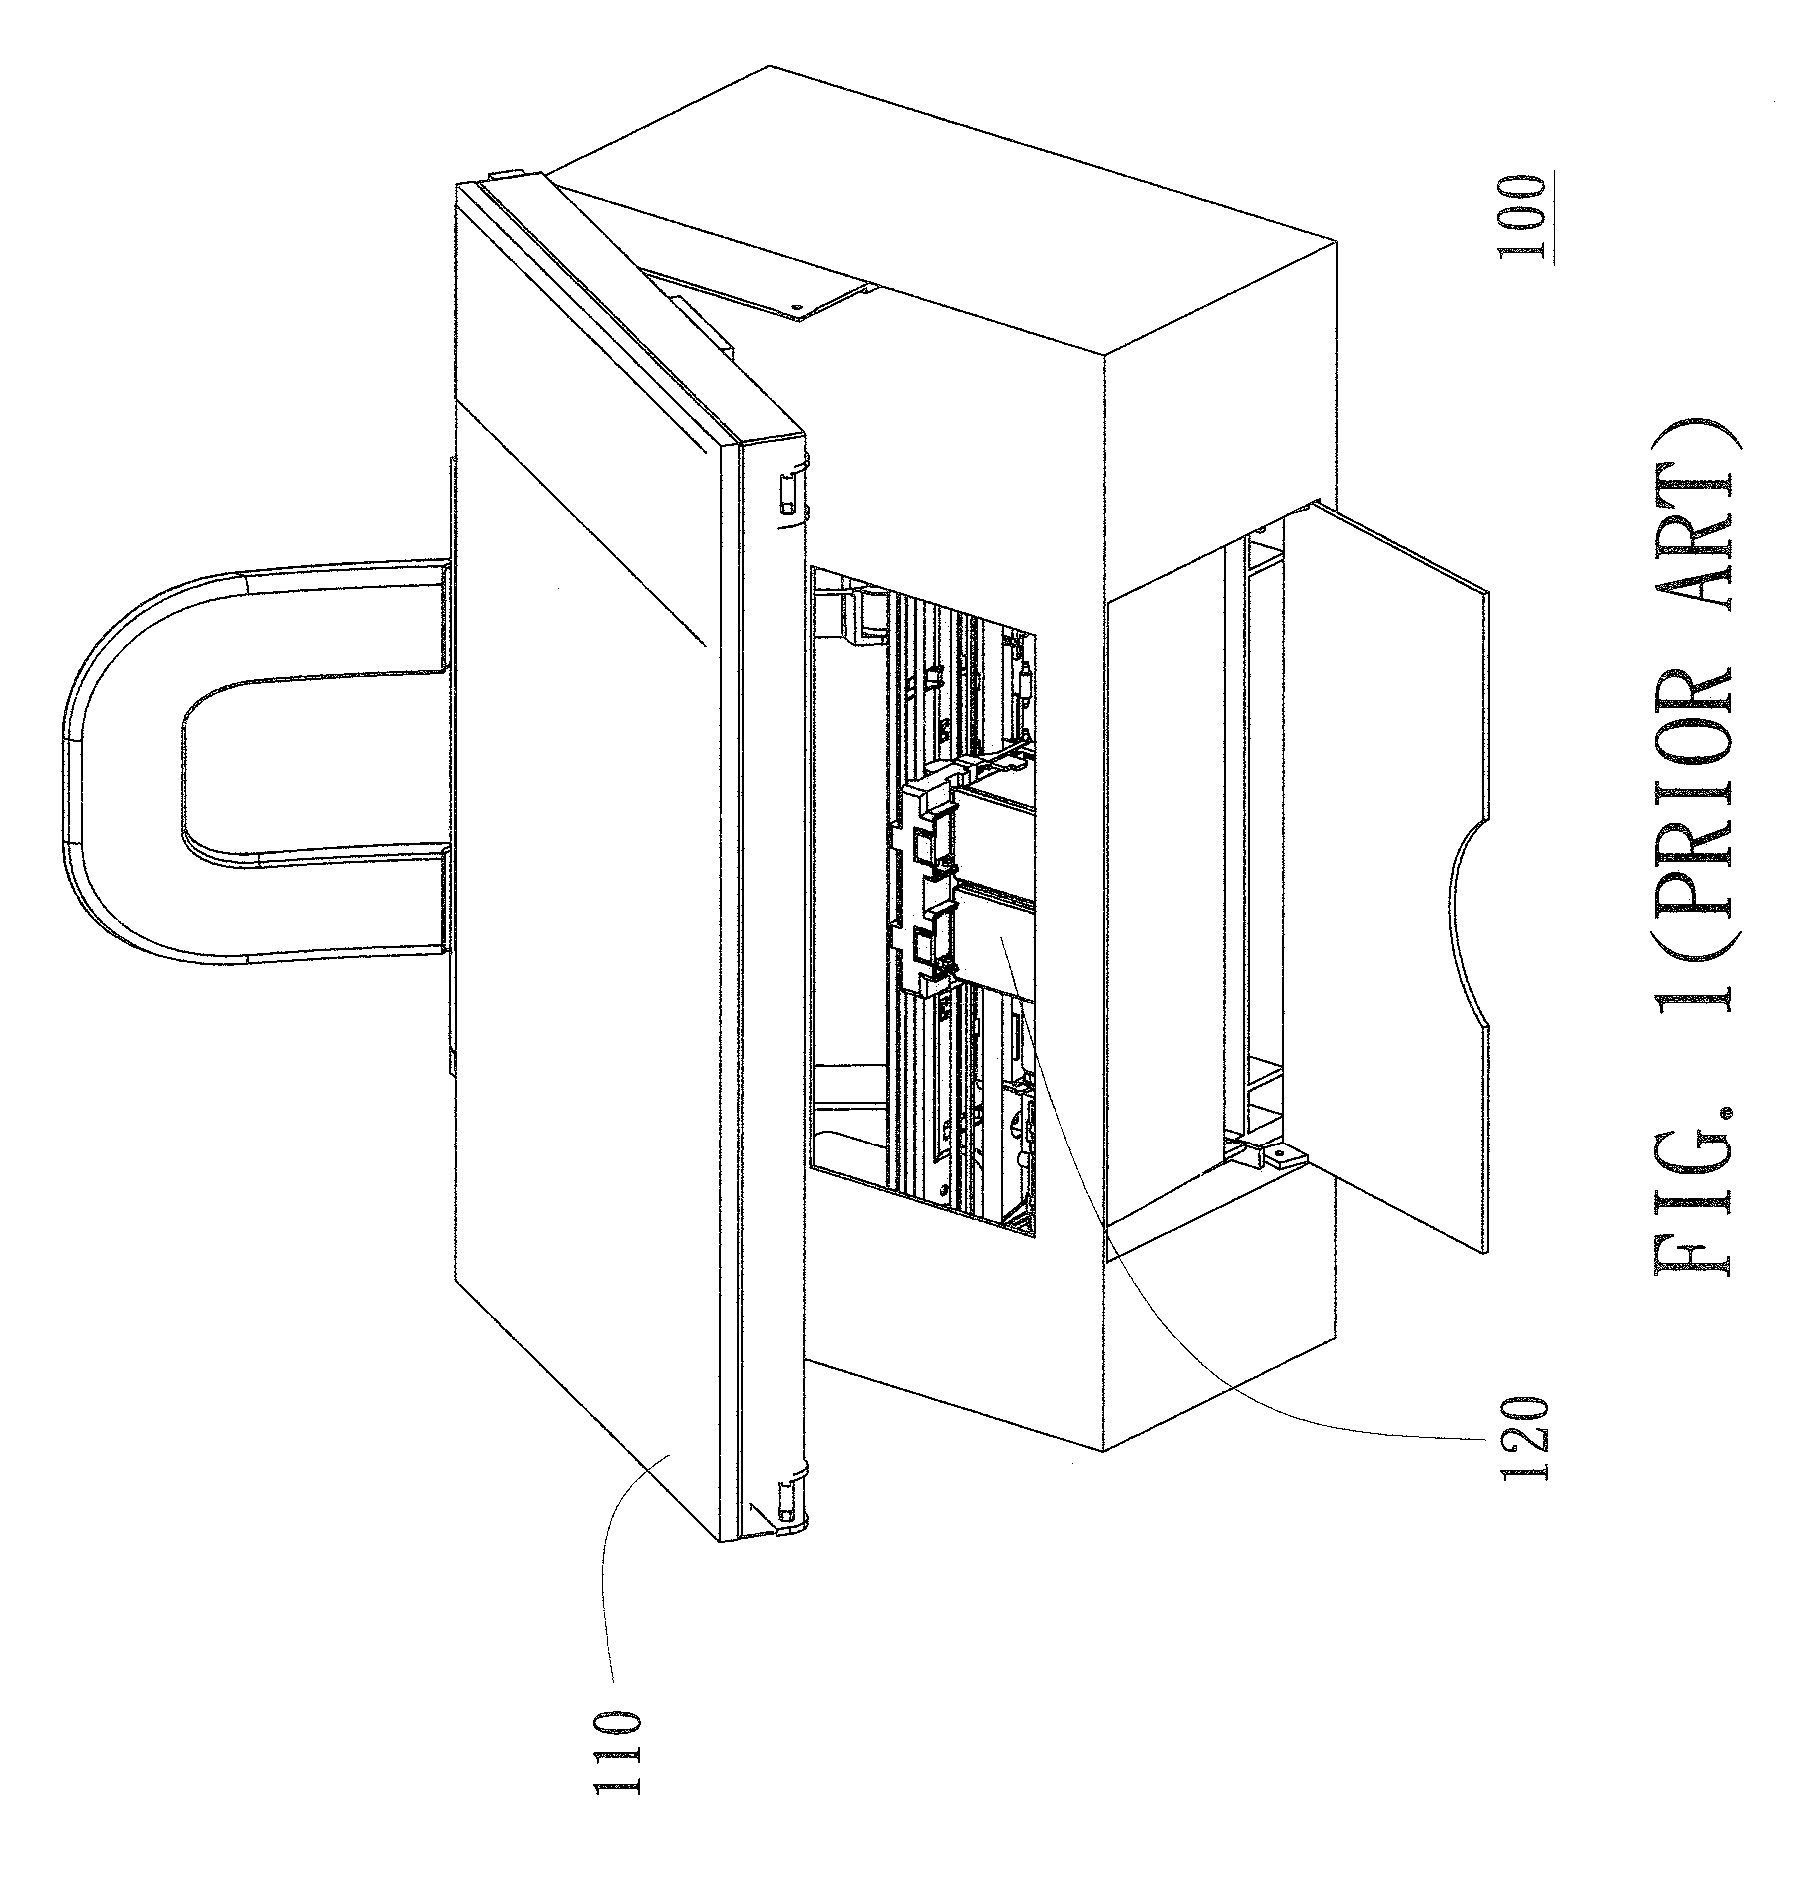 Star wheel releasing mechanism of printing apparatus